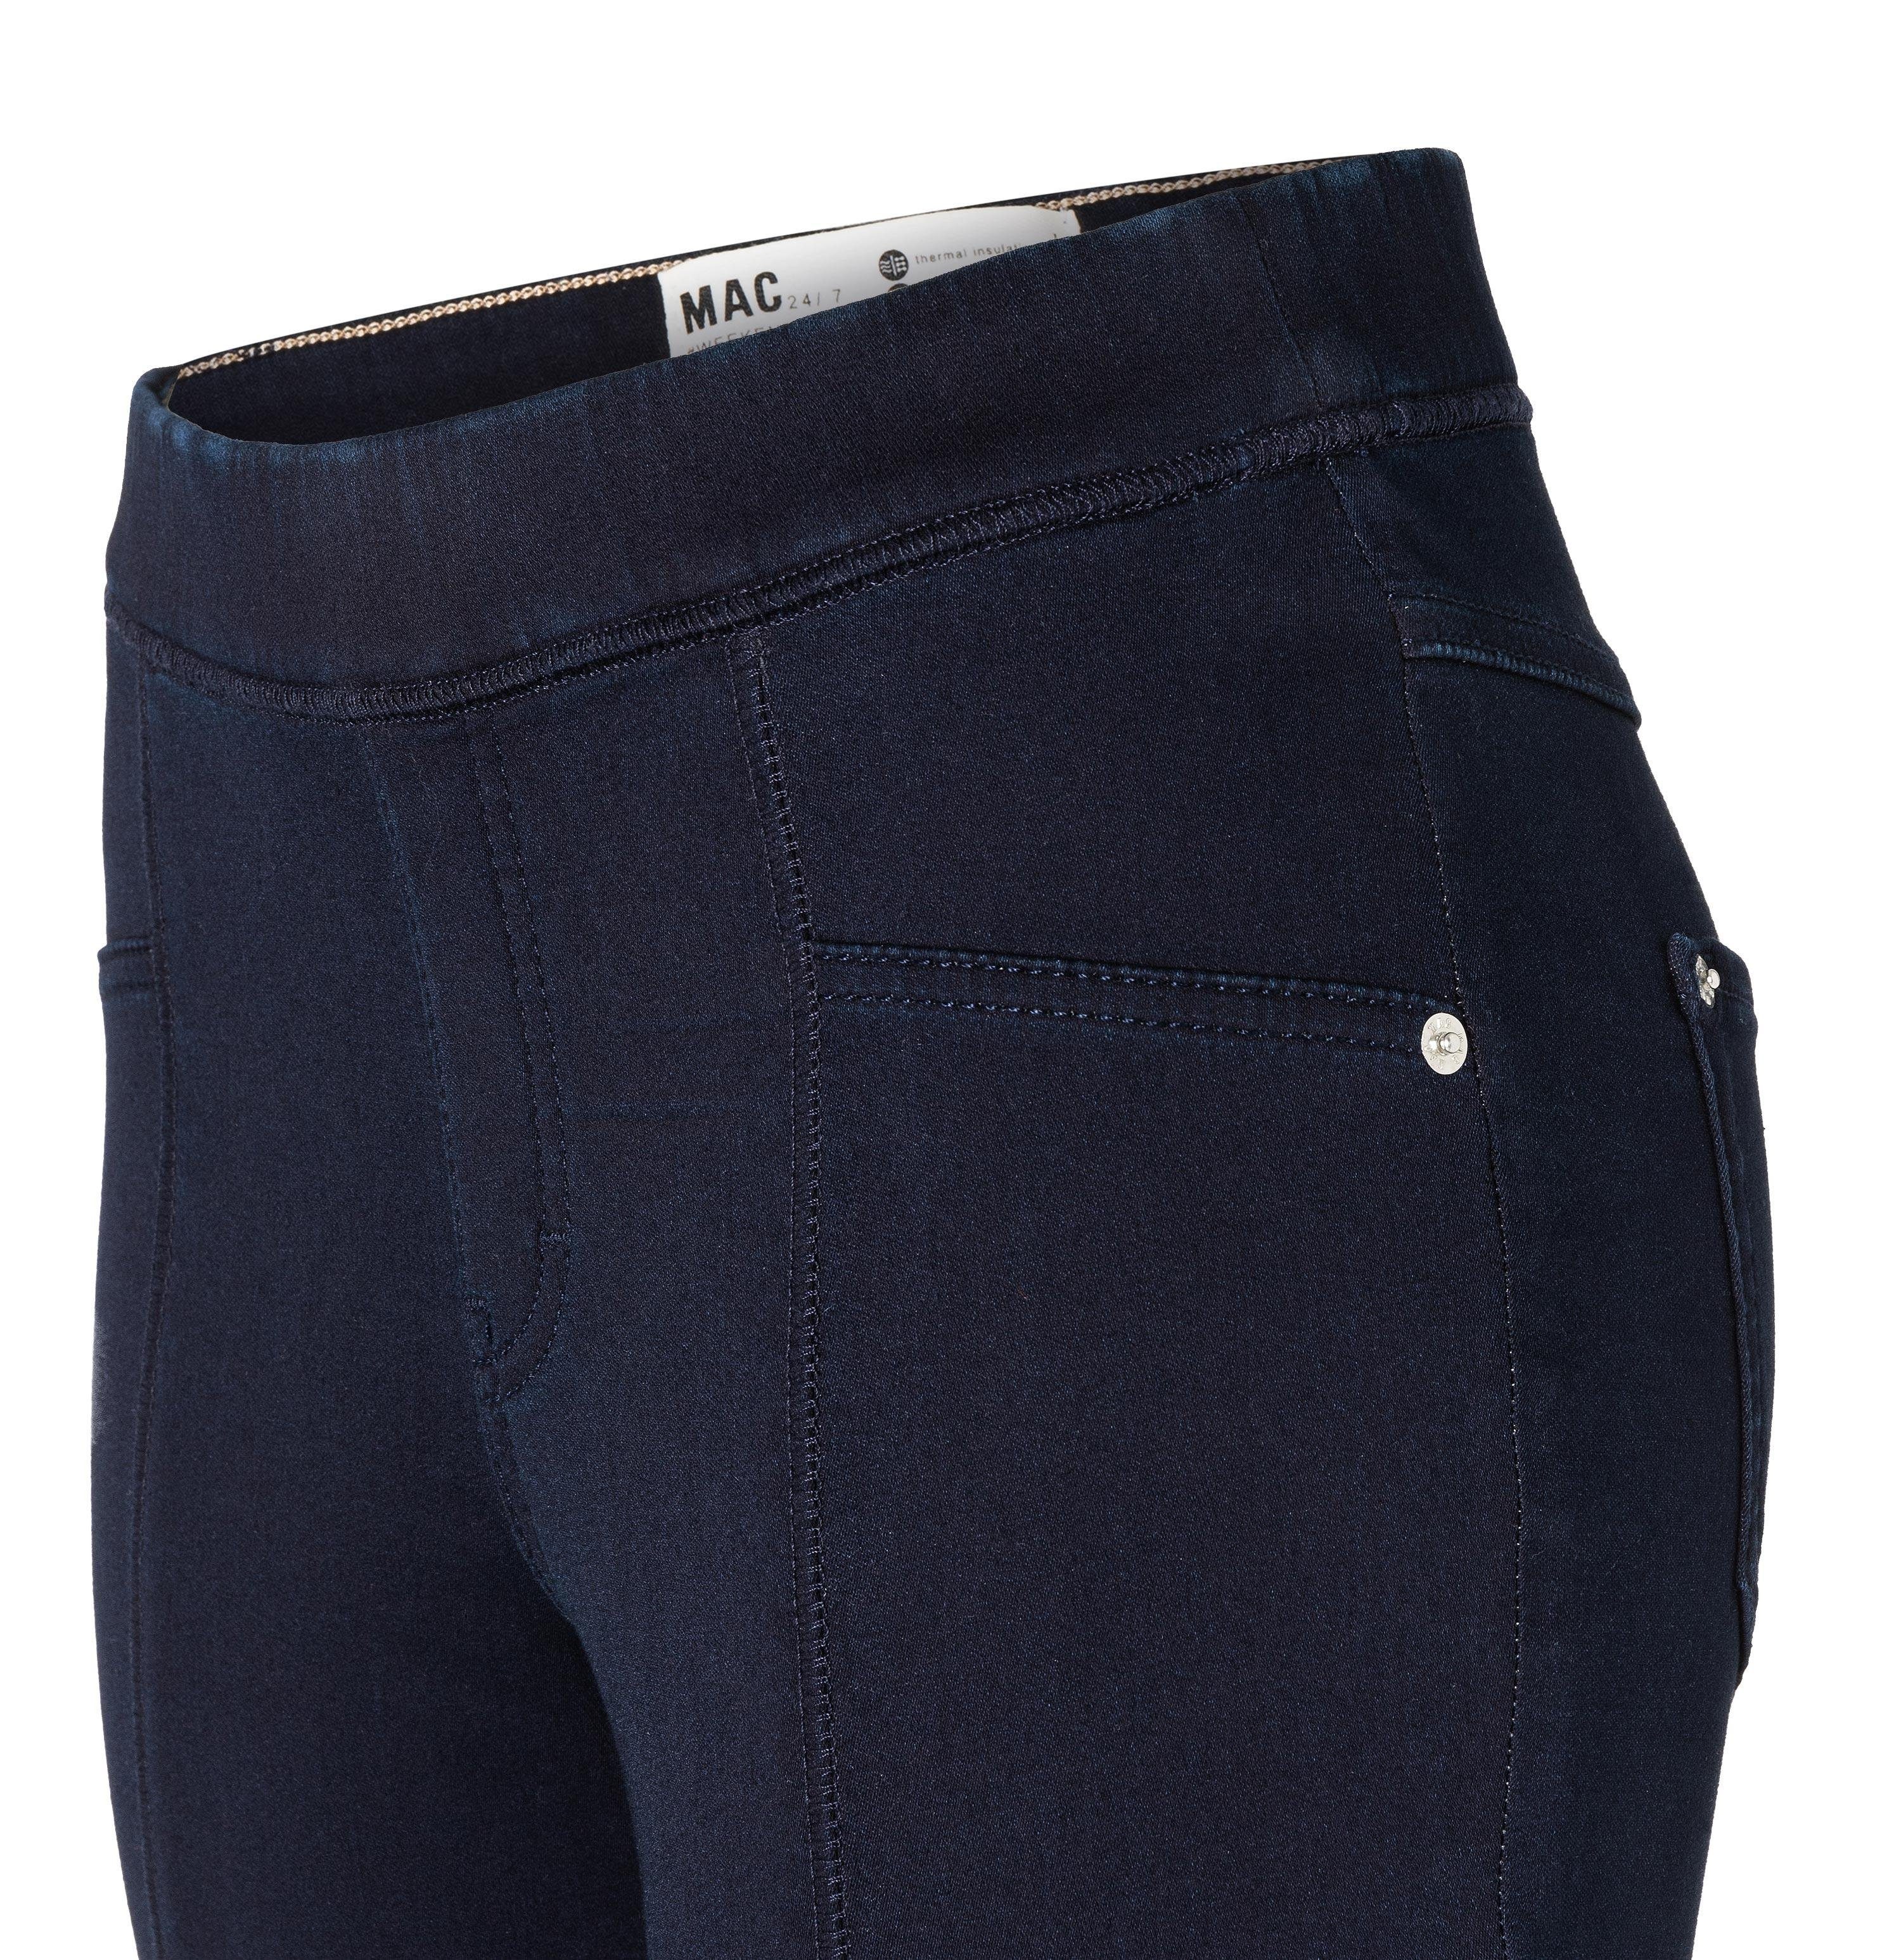 Stretch-Jeans MAC rinsewash - LEGGINGS MAC ISKO™ D802 SOFT than more 5907-90-0350 DENIM